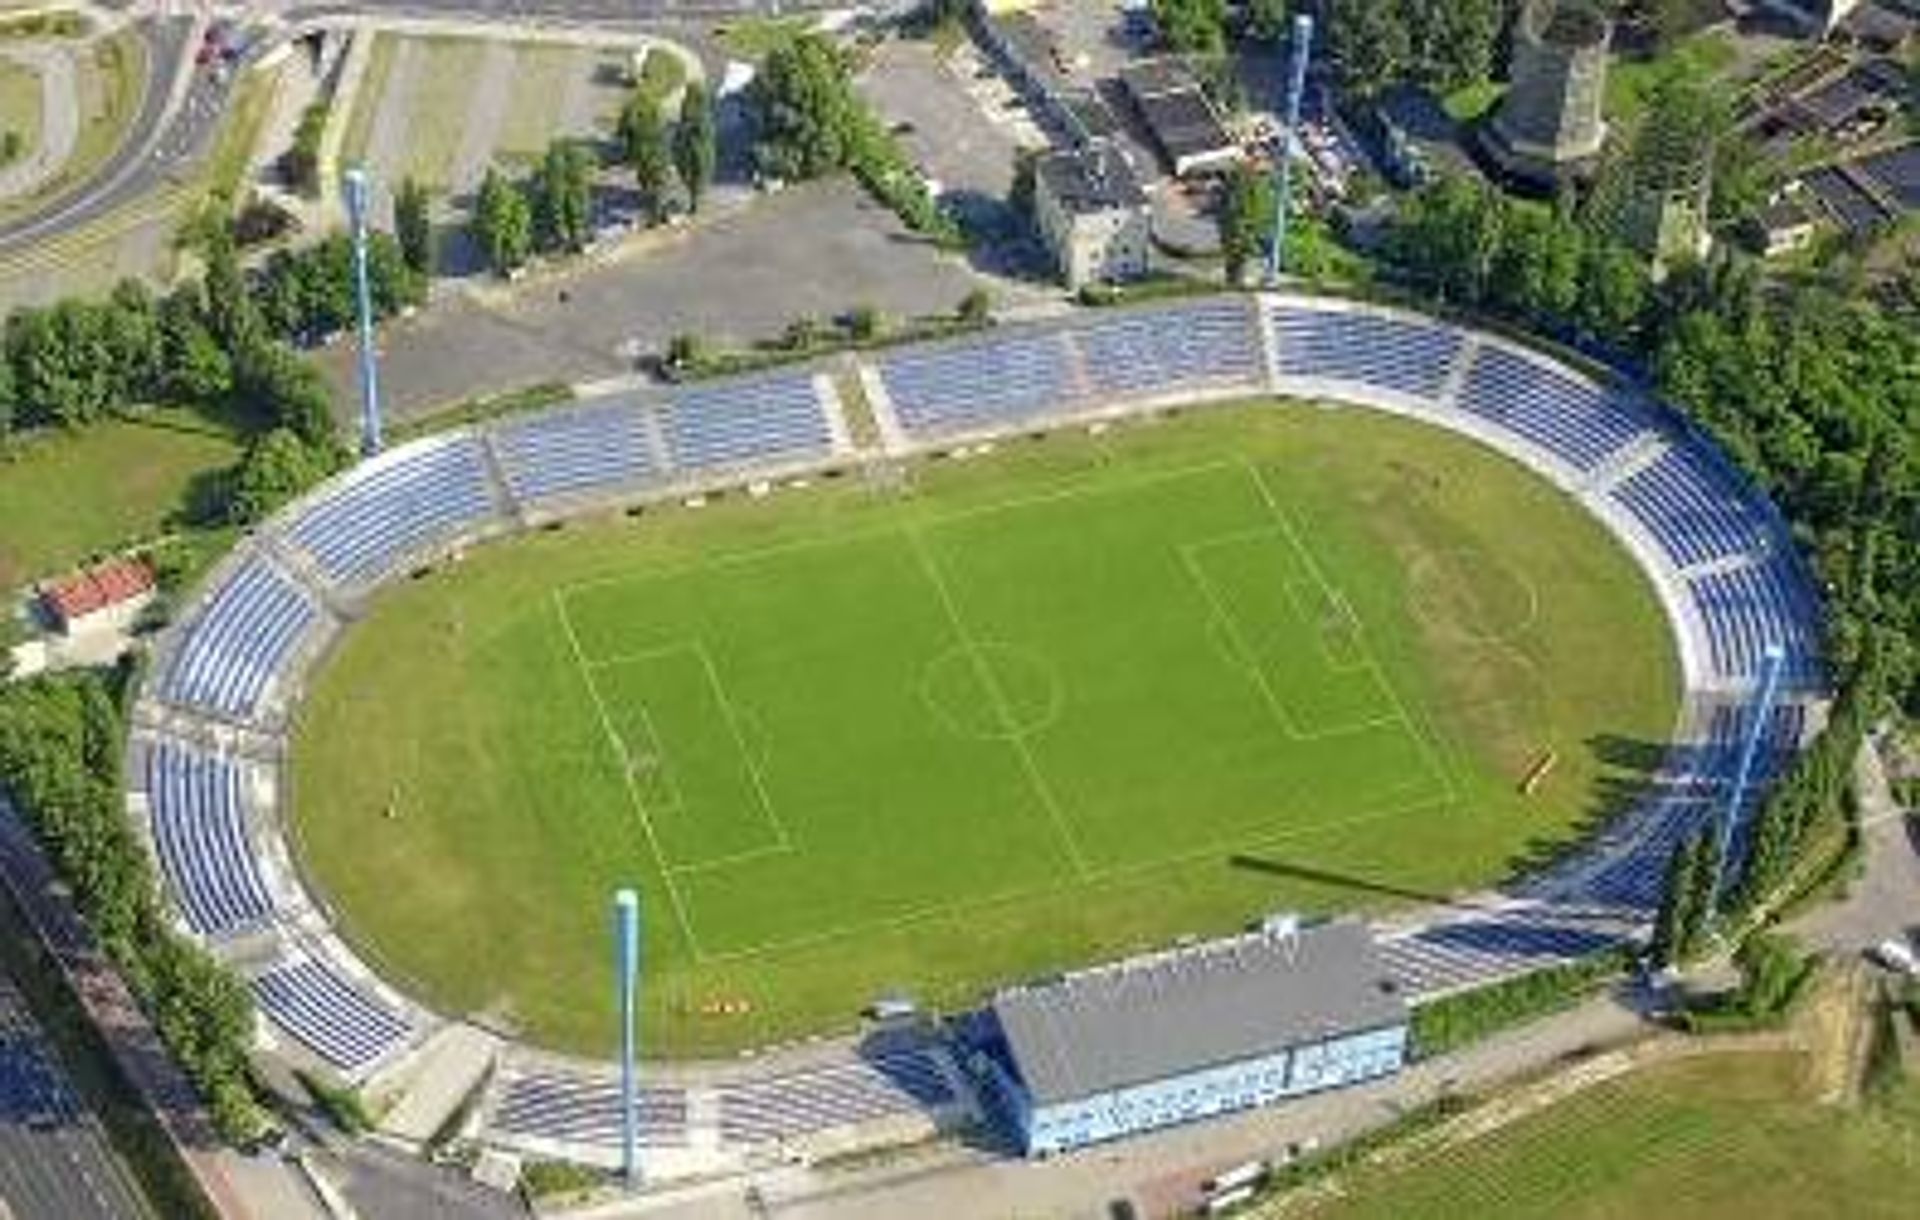  Miasto Chorzów wyremontuje stadion Ruchu